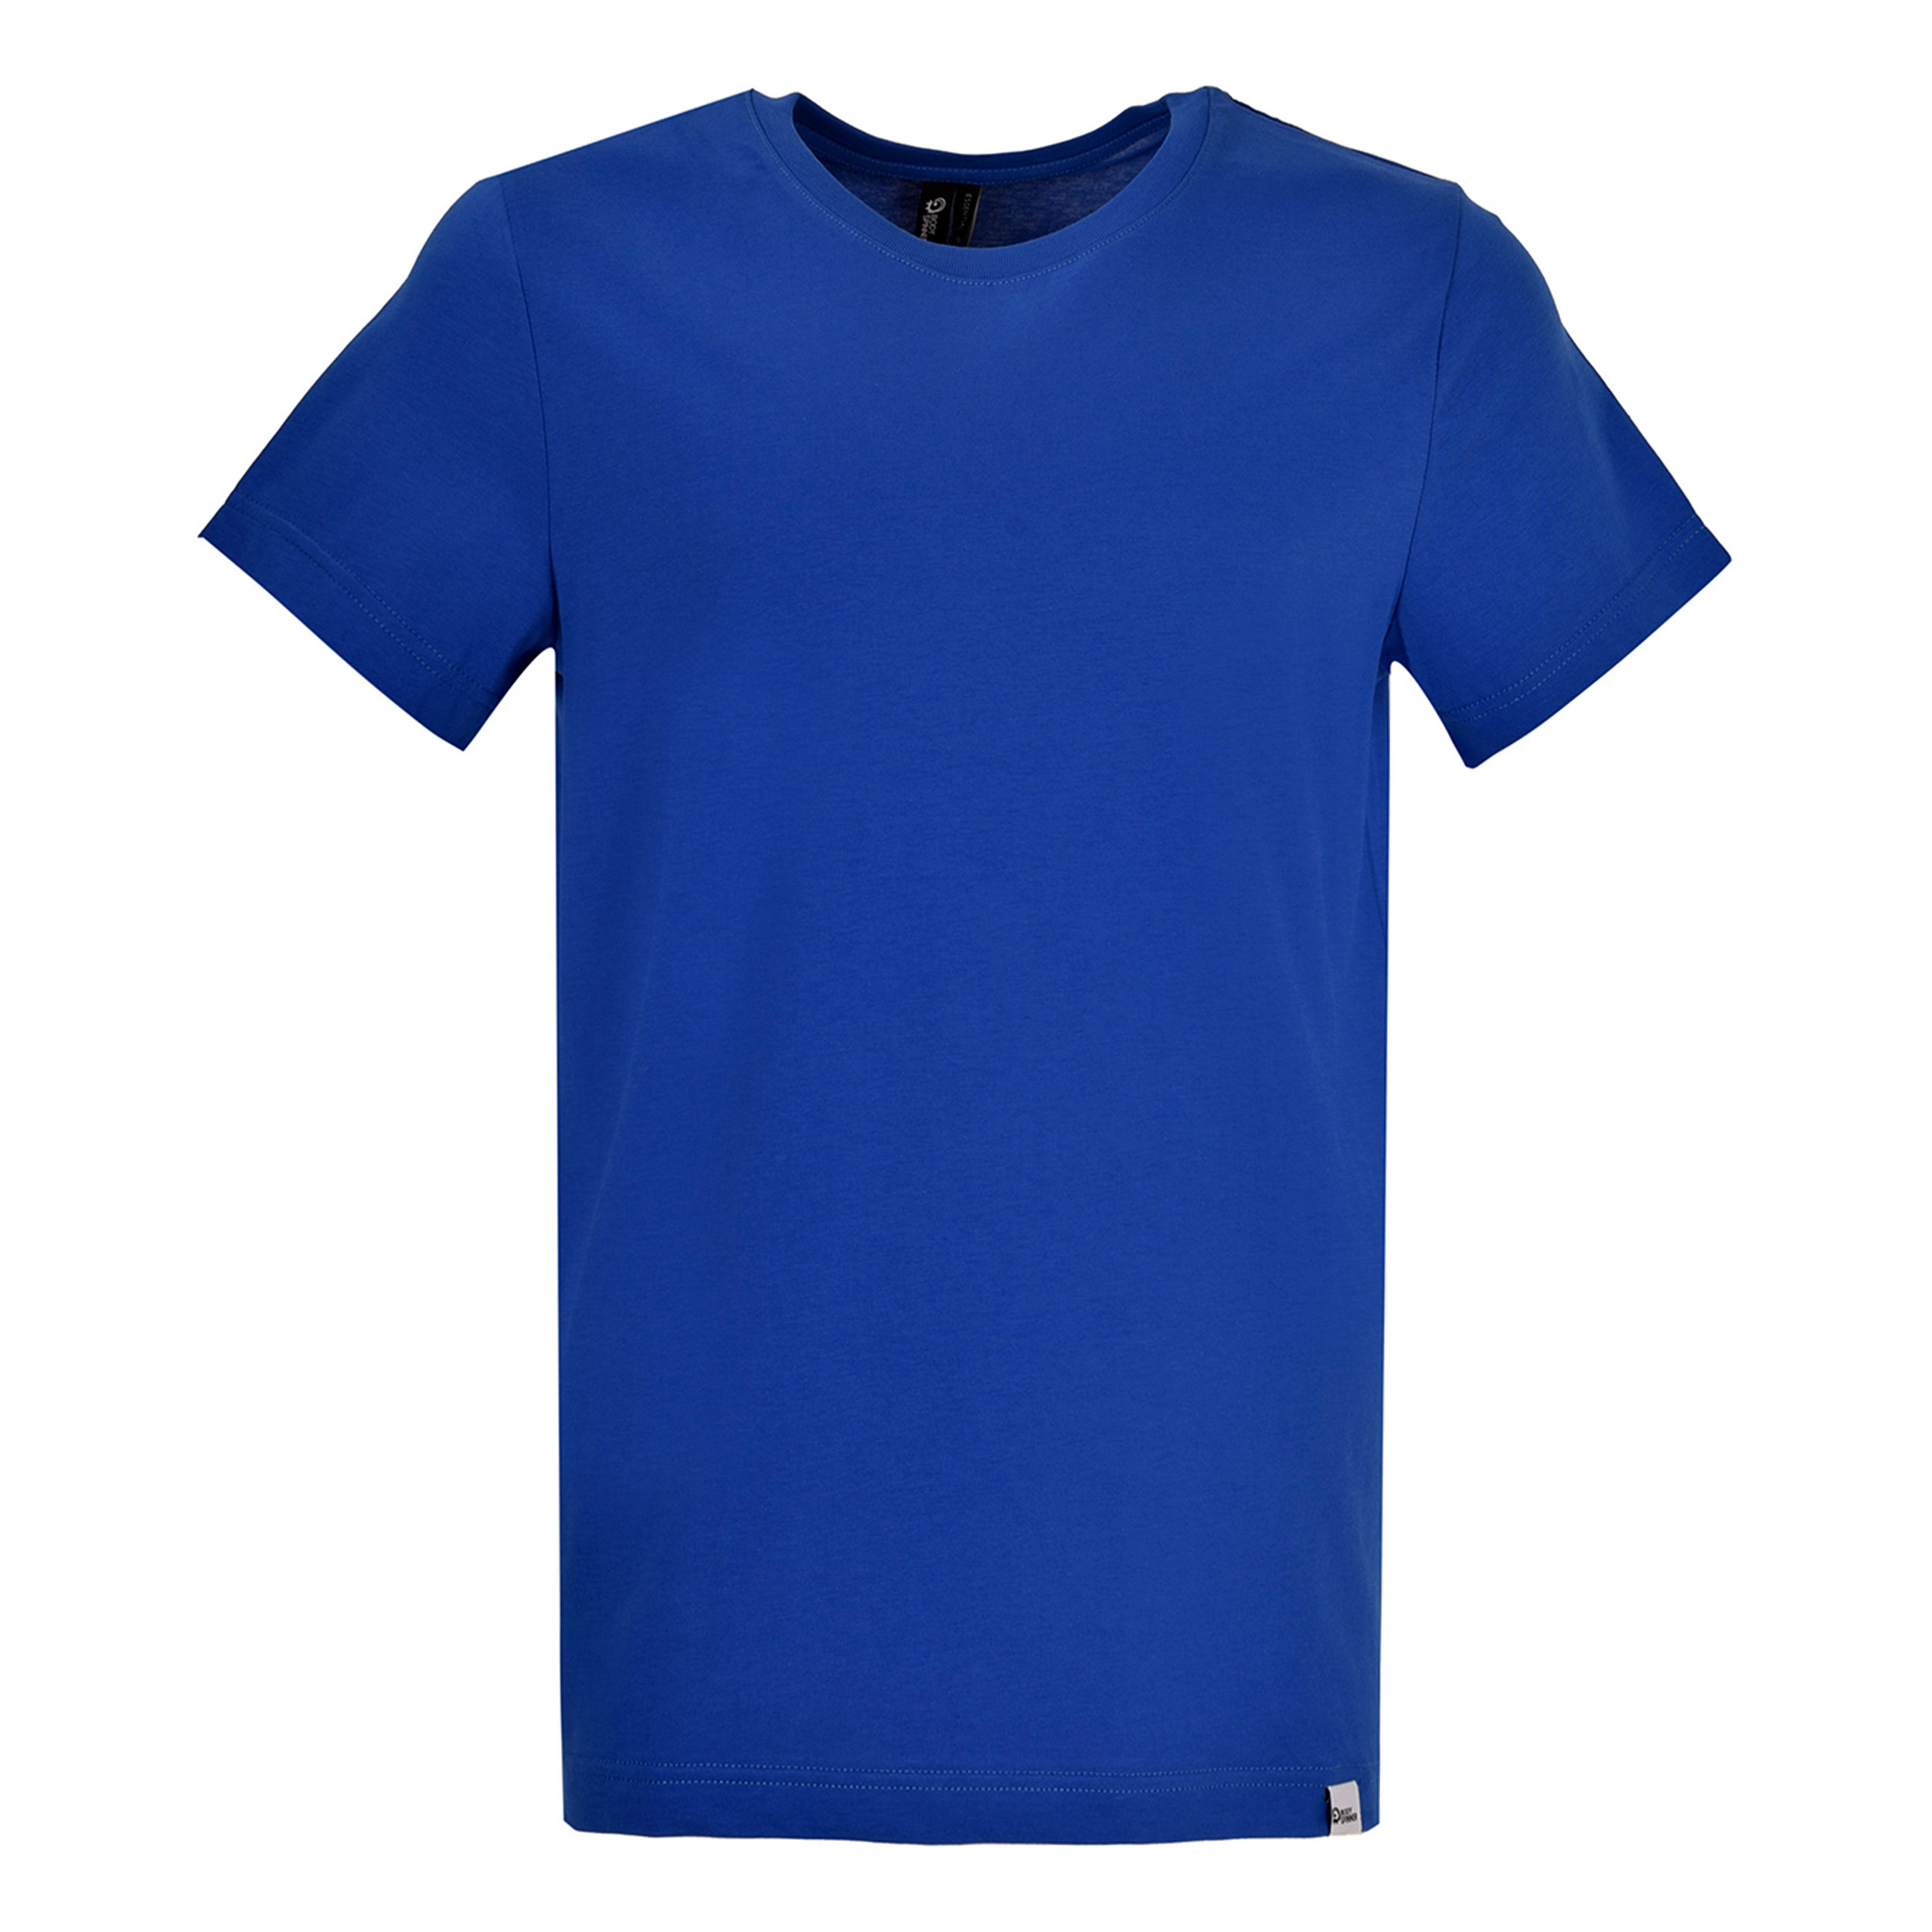 تی شرت آستین کوتاه مردانه بادی اسپینر مدل 11964737 کد 3 رنگ آبی -  - 1